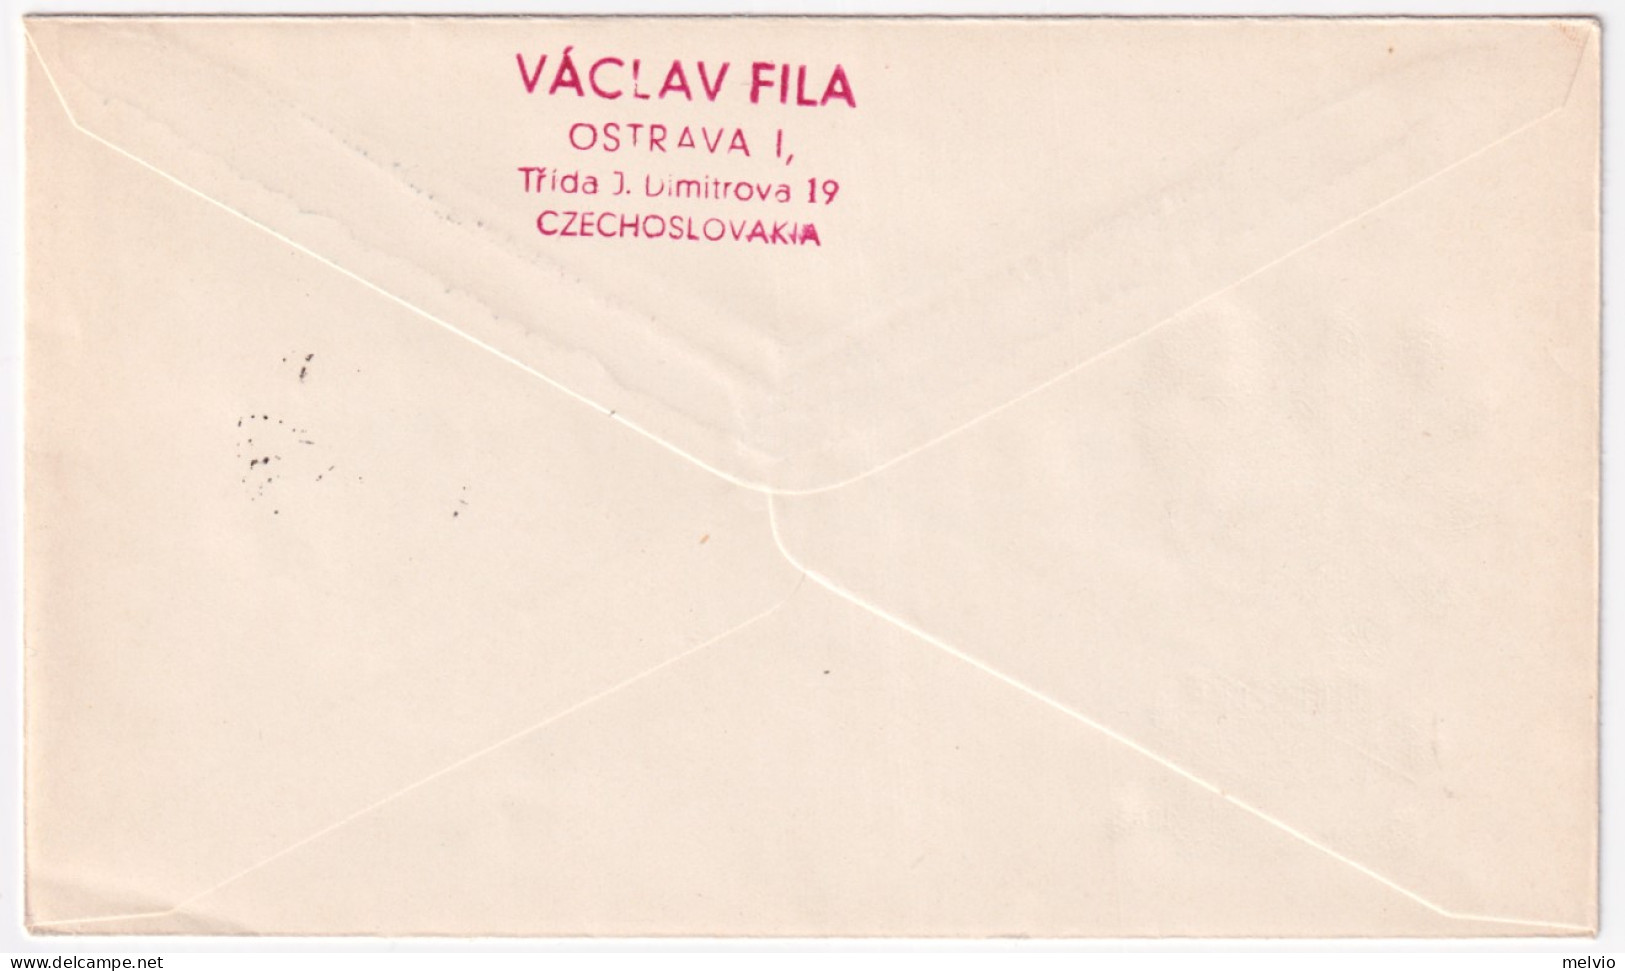 1963-CECOSLOVACCHIA Fiera Di Libereck (1290) Su Fdc - FDC